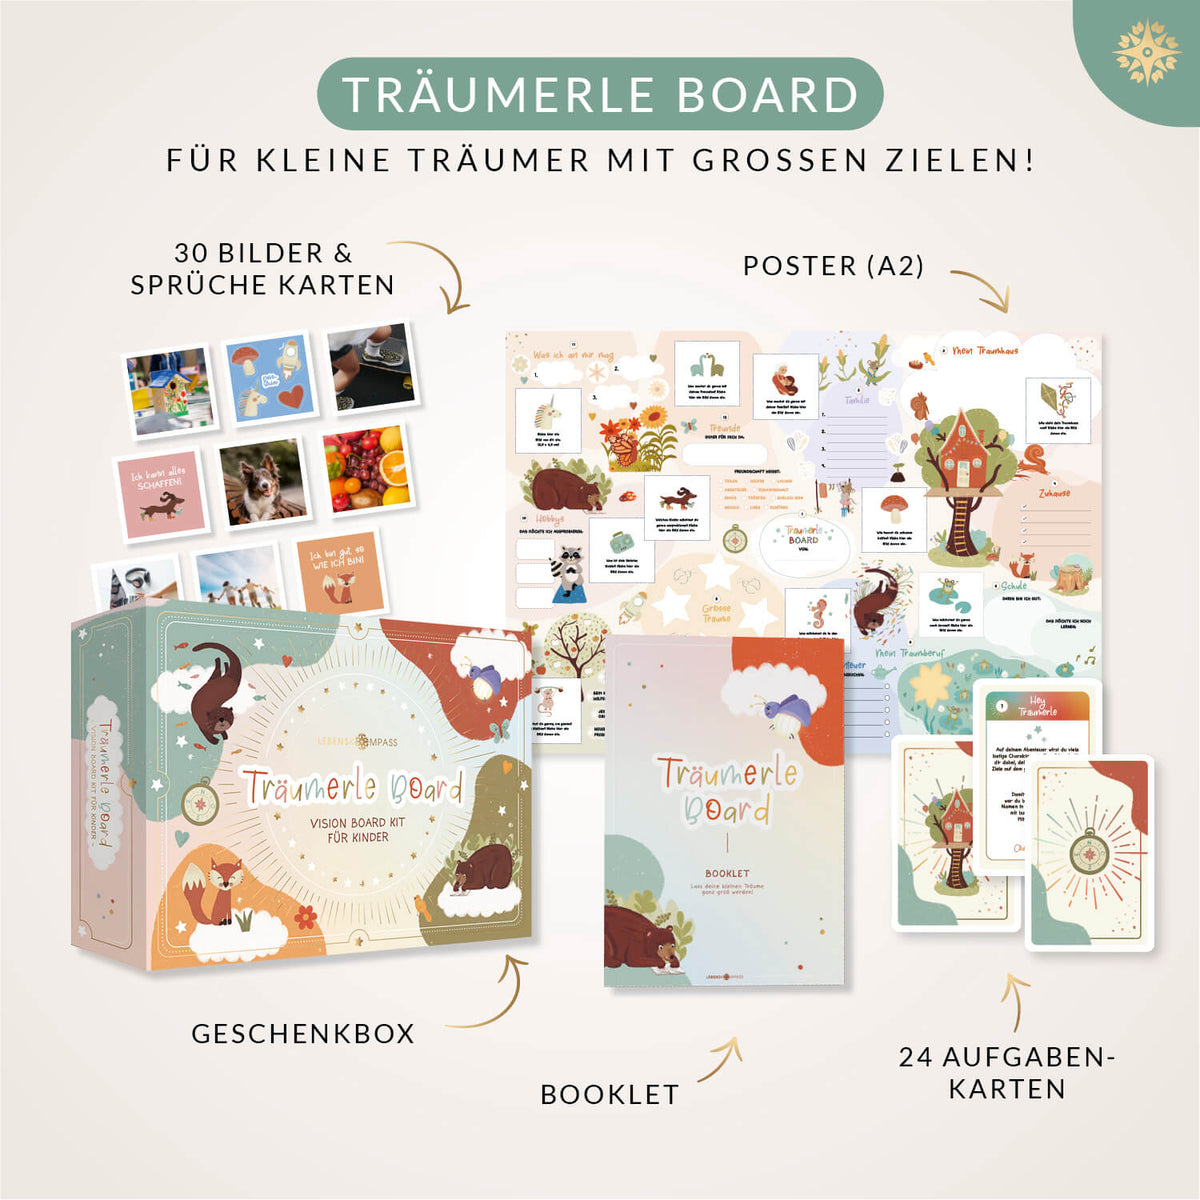 "Träumerle Board" - Das Vision Board Set für Kinder